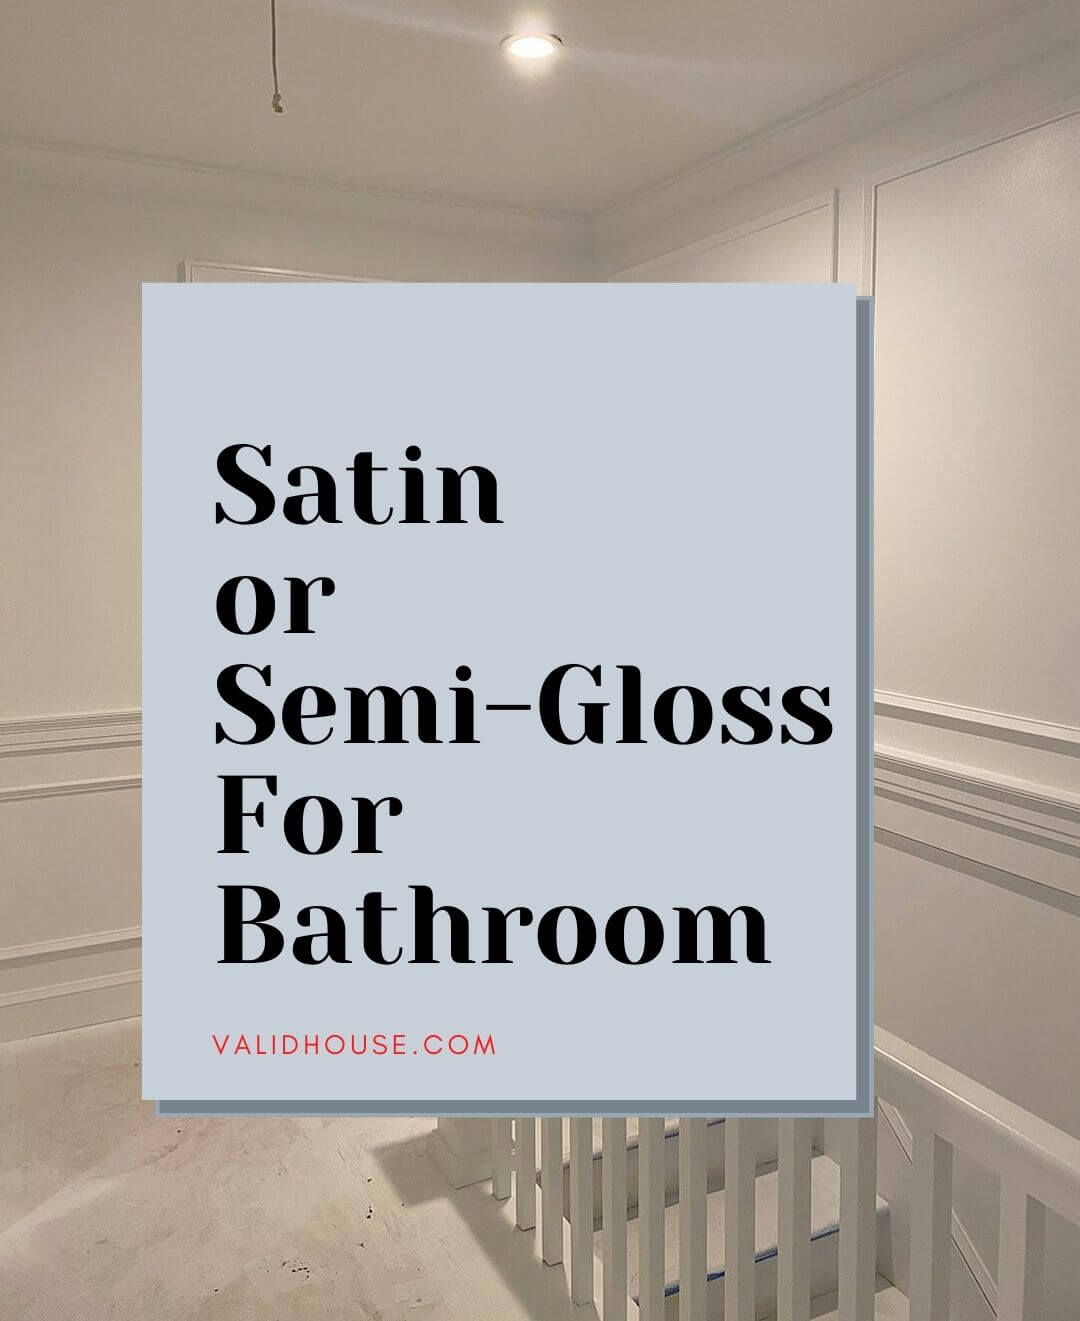 Satin or Semi Gloss For Bathroom